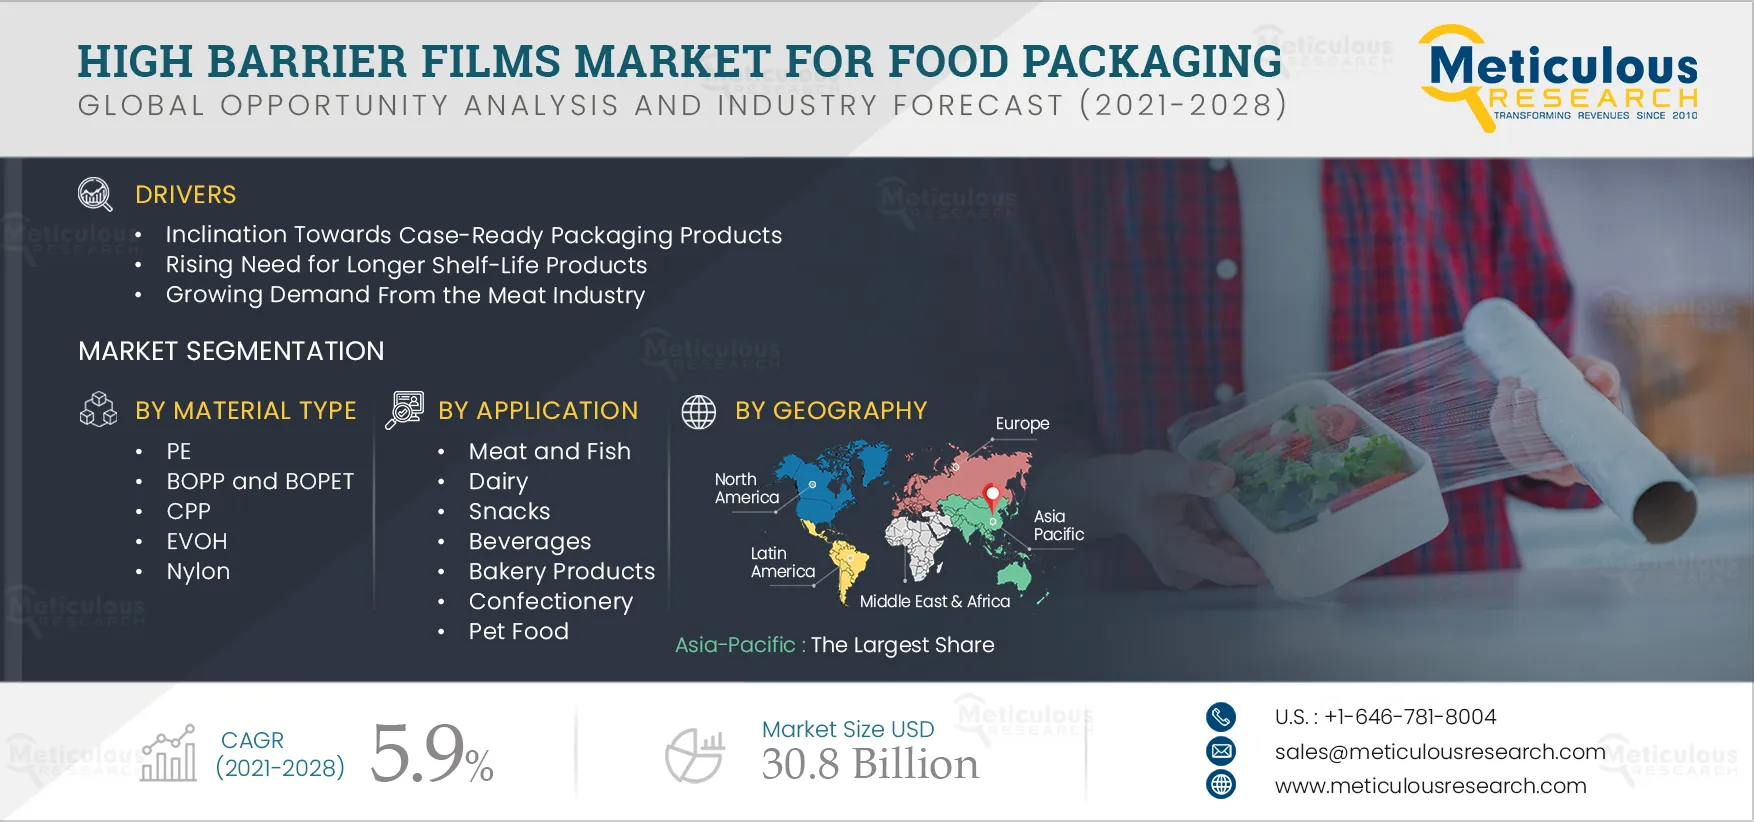 High Barrier Films Market for Food Packaging